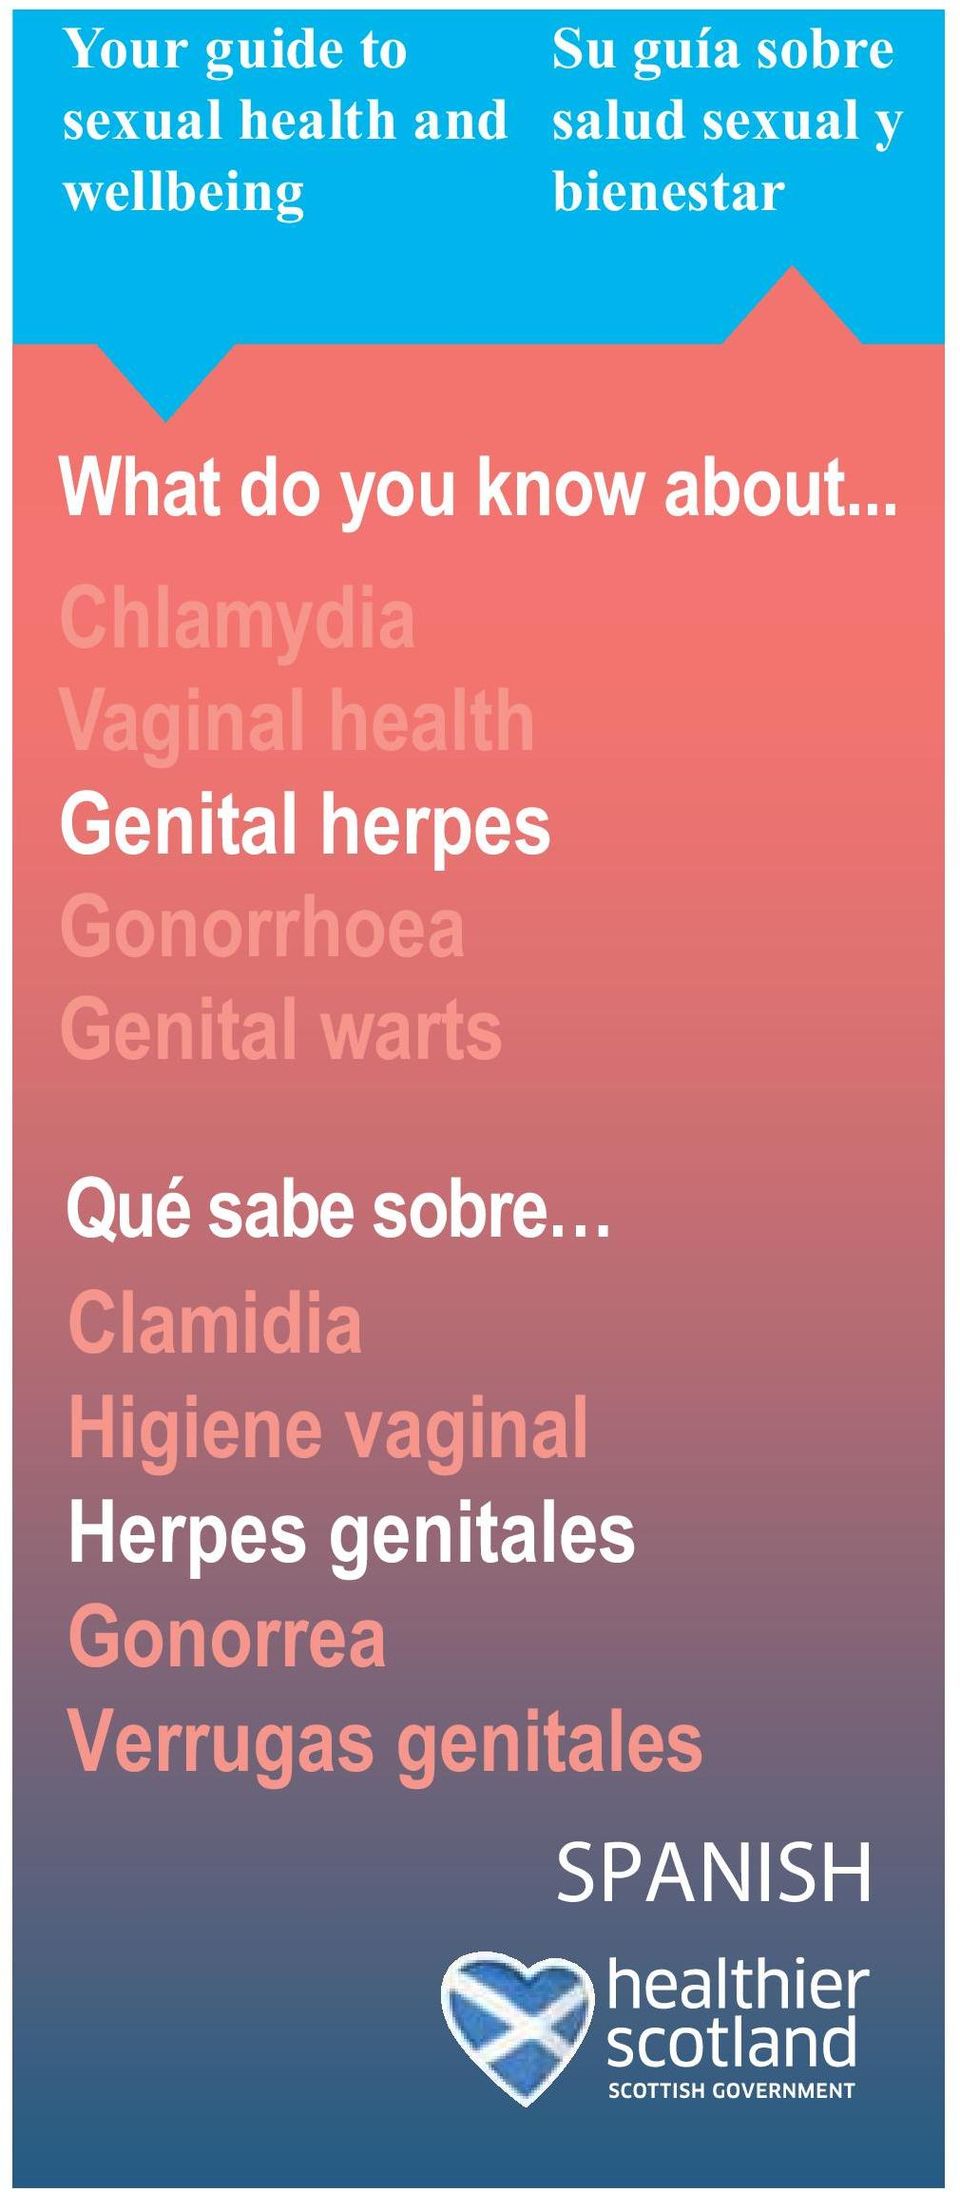 .. Chlamydia Vaginal health Genital herpes Gonorrhoea Genital